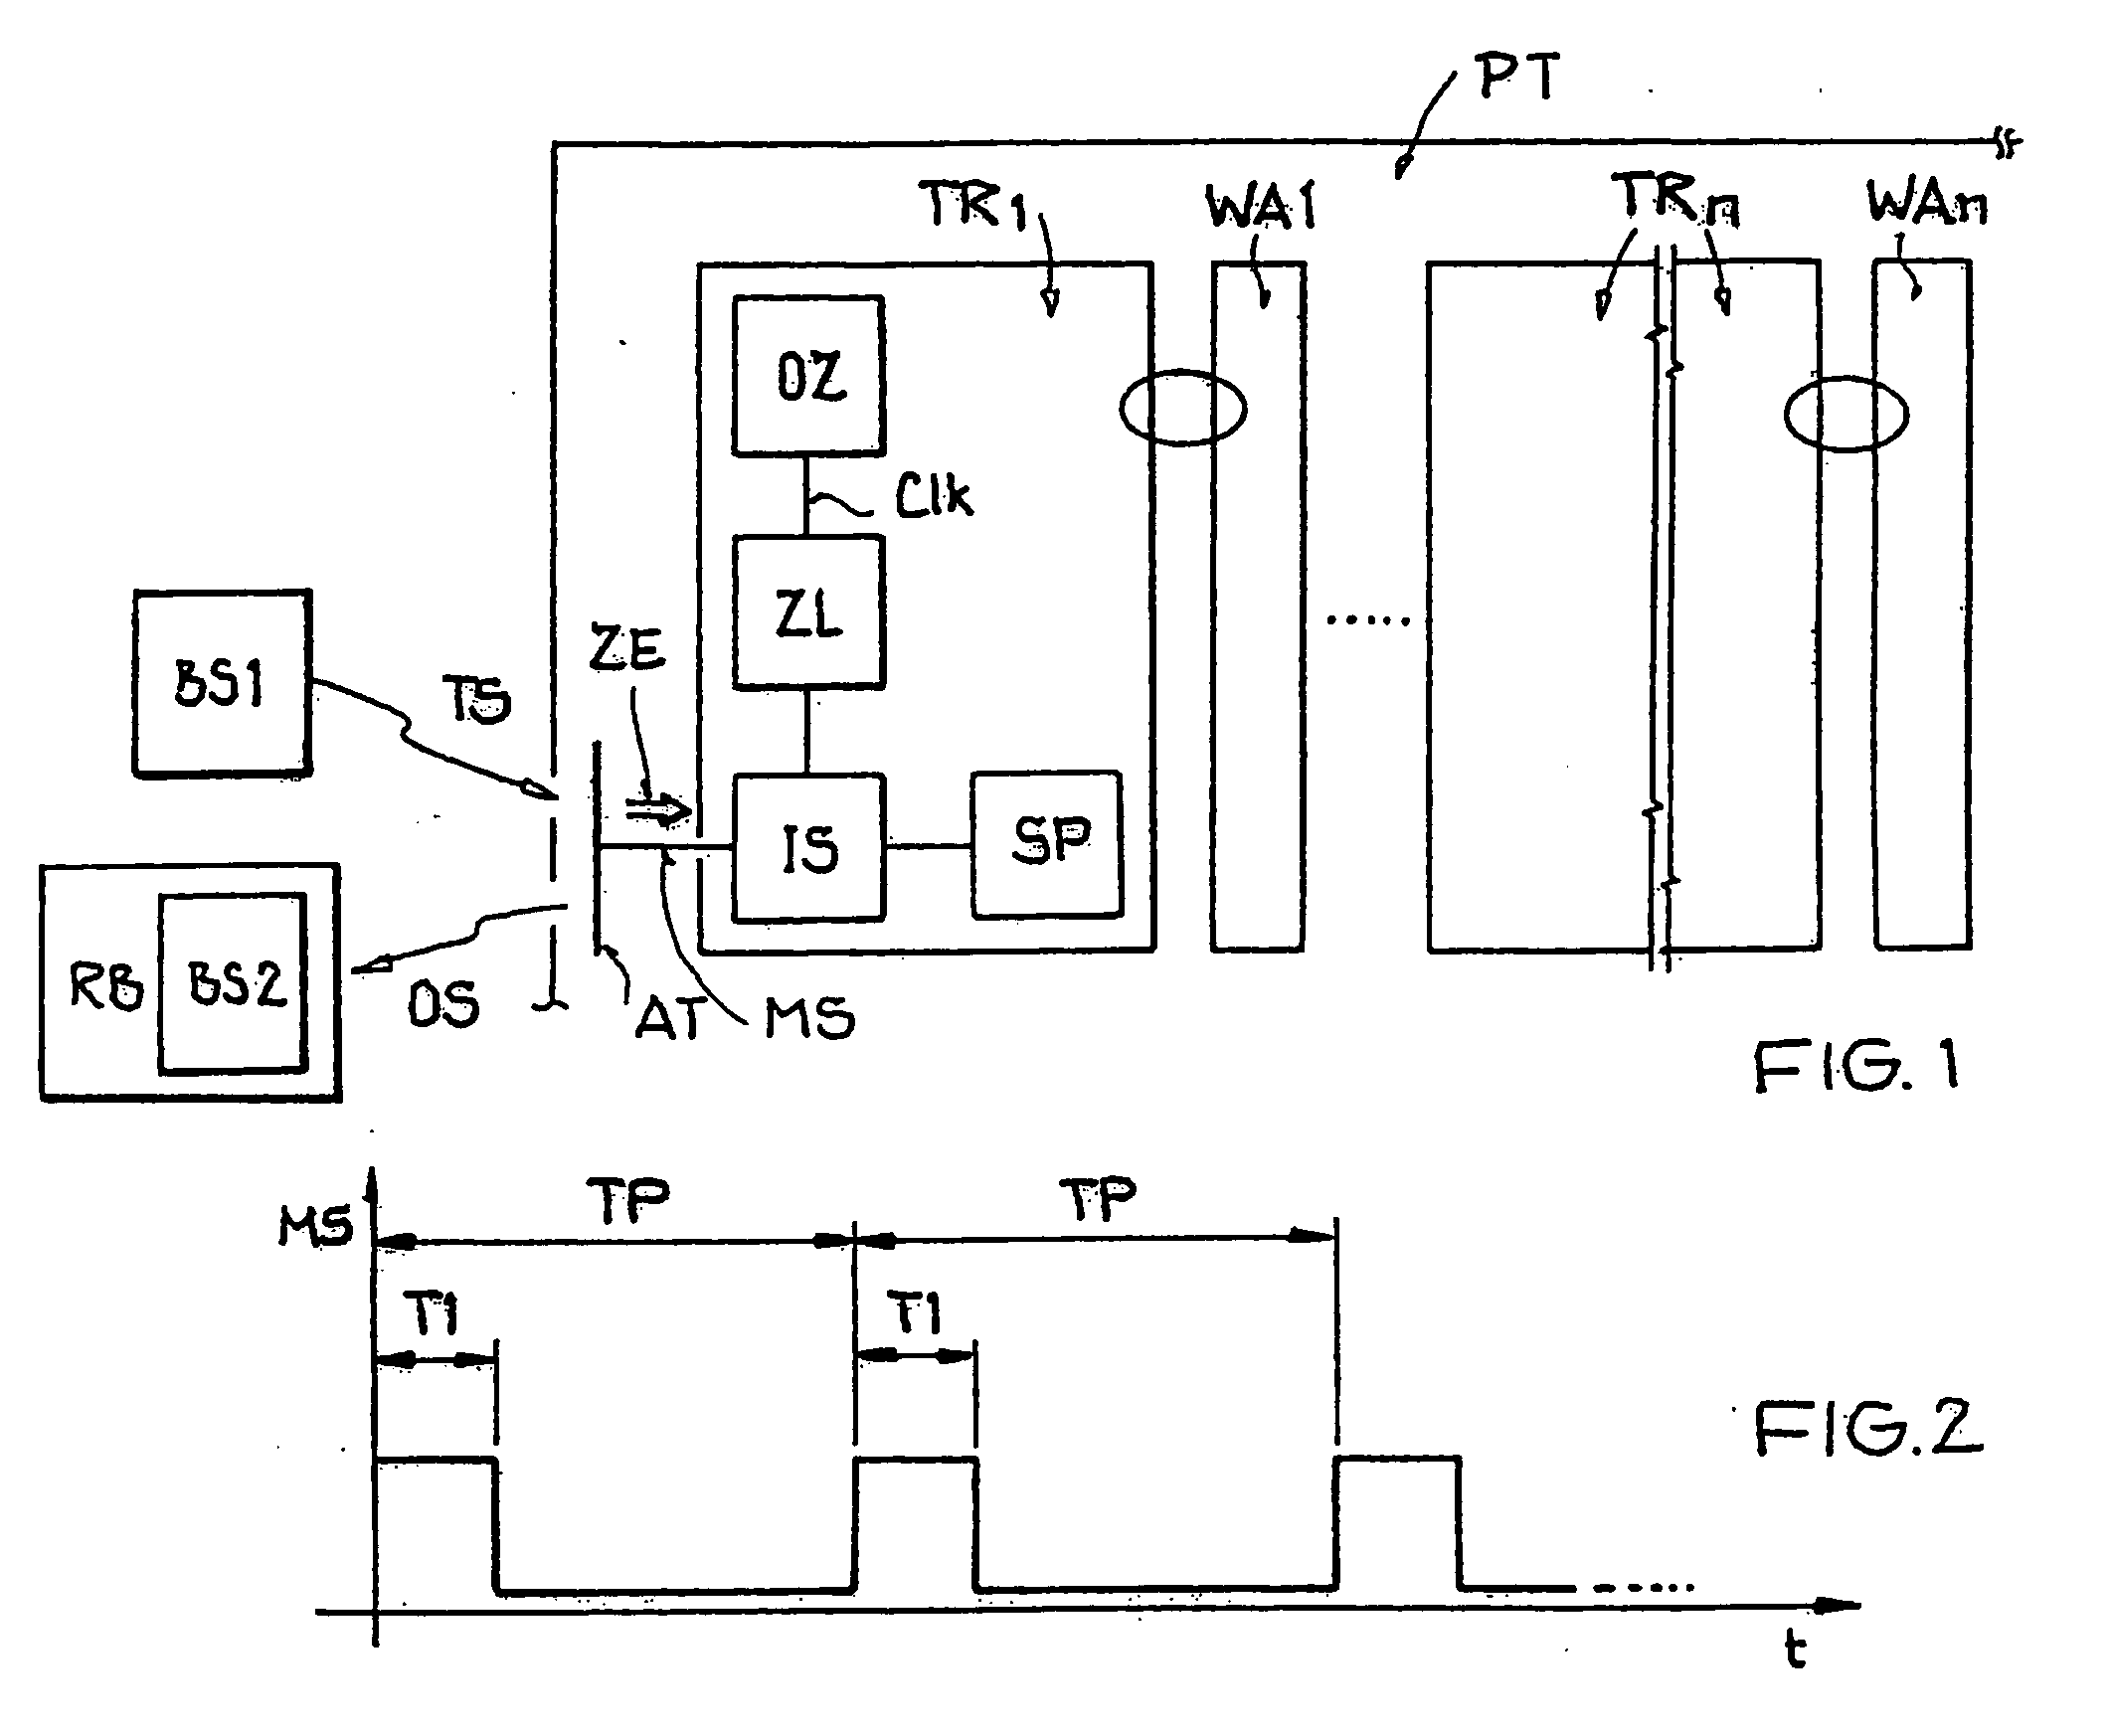 Method for locating a backscatter-based transponder